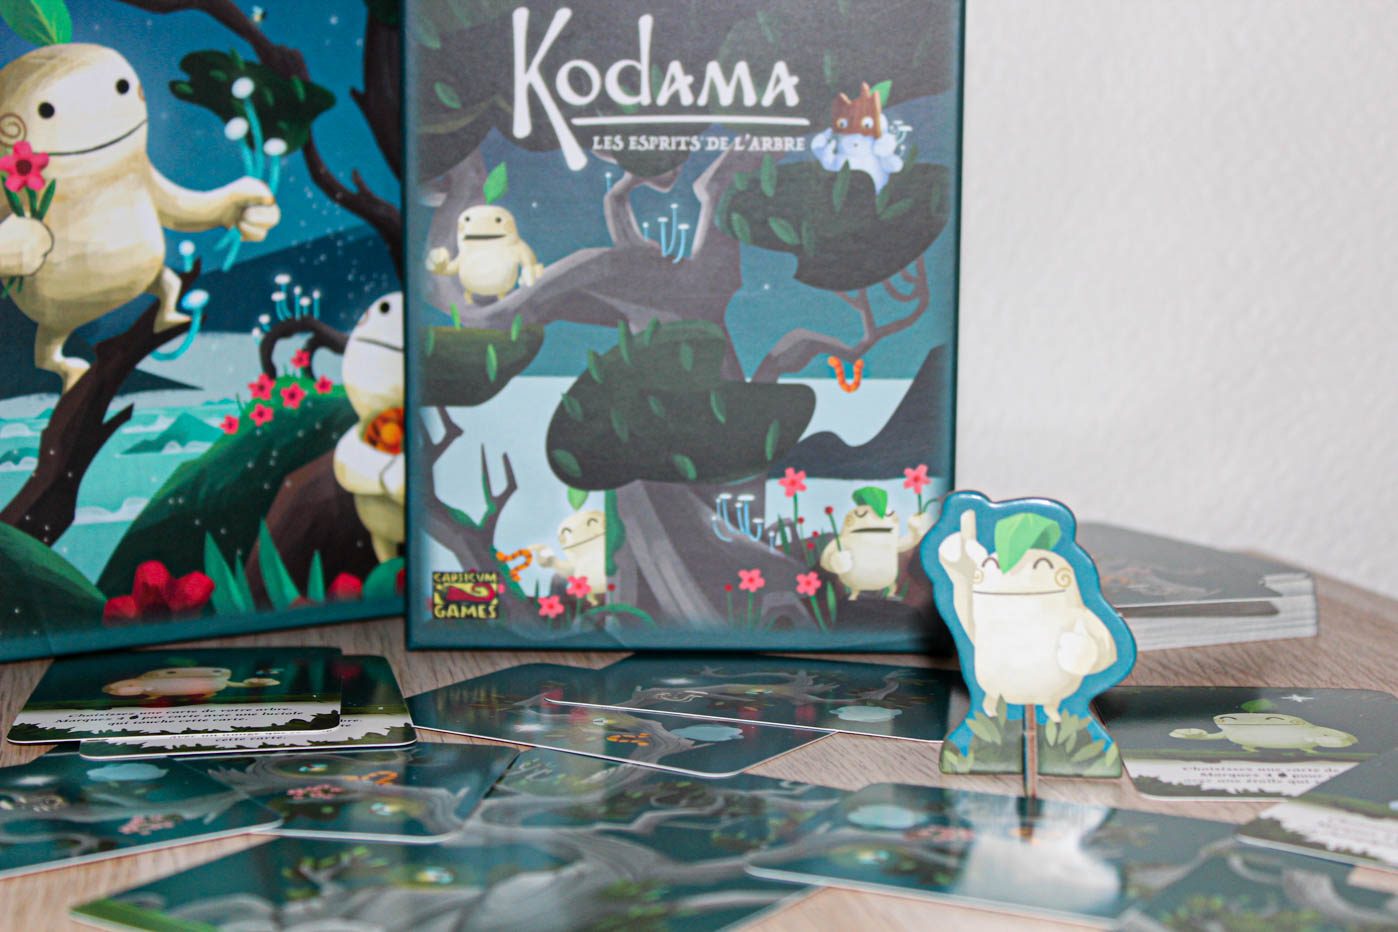 Kodama board game